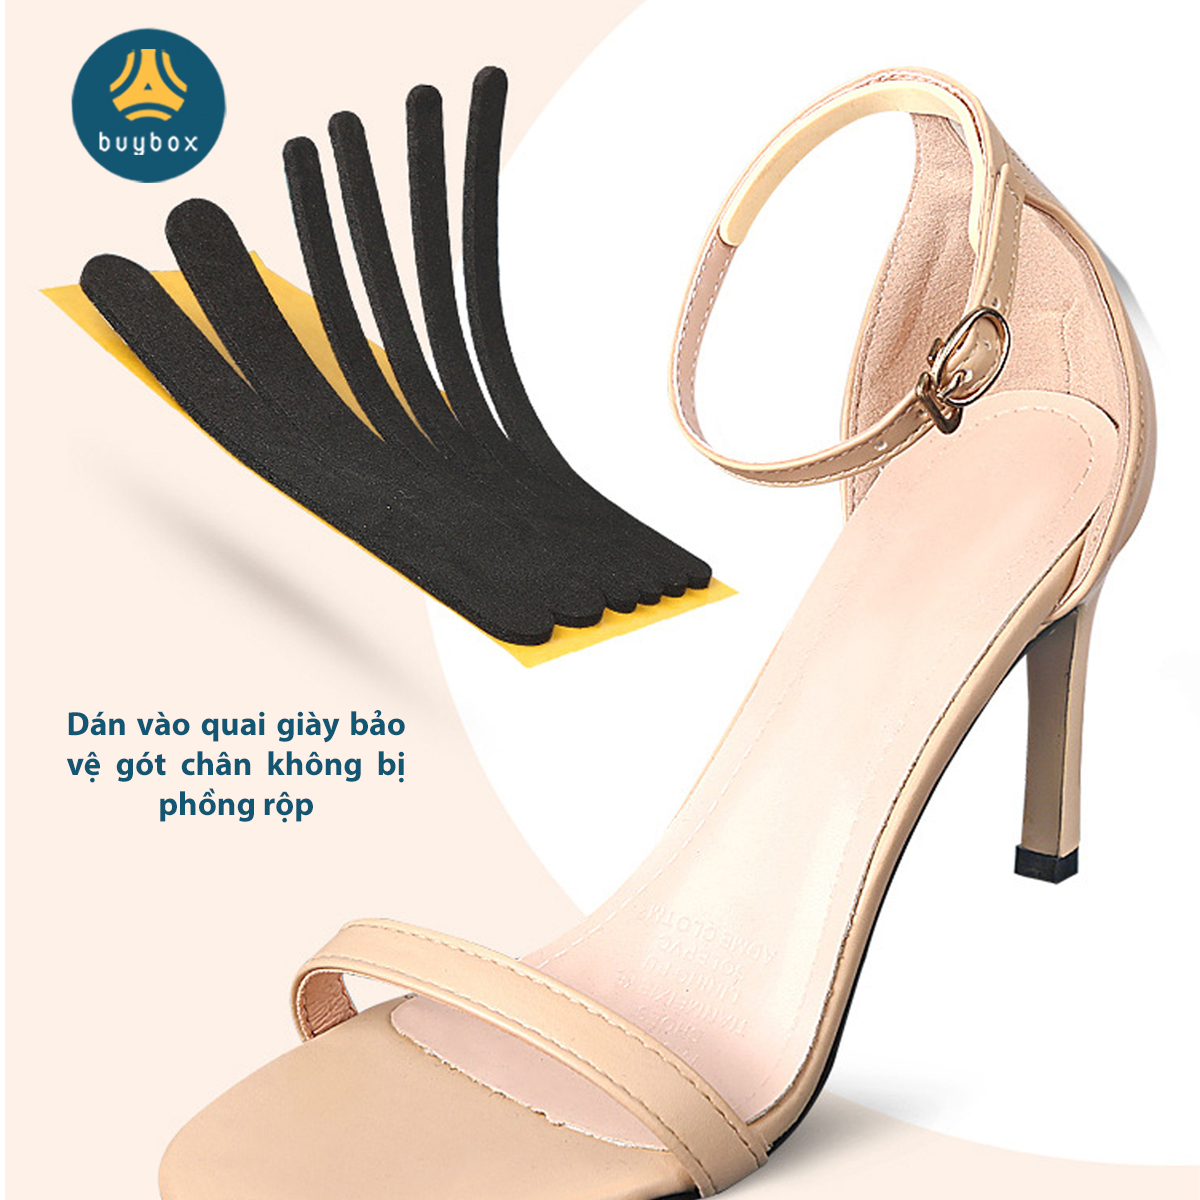 Miếng dán chống trầy gót chuyên dùng cho sandal, giày cao gót chất liệu EVA, silicone cao cấp - Buybox - BBPK282